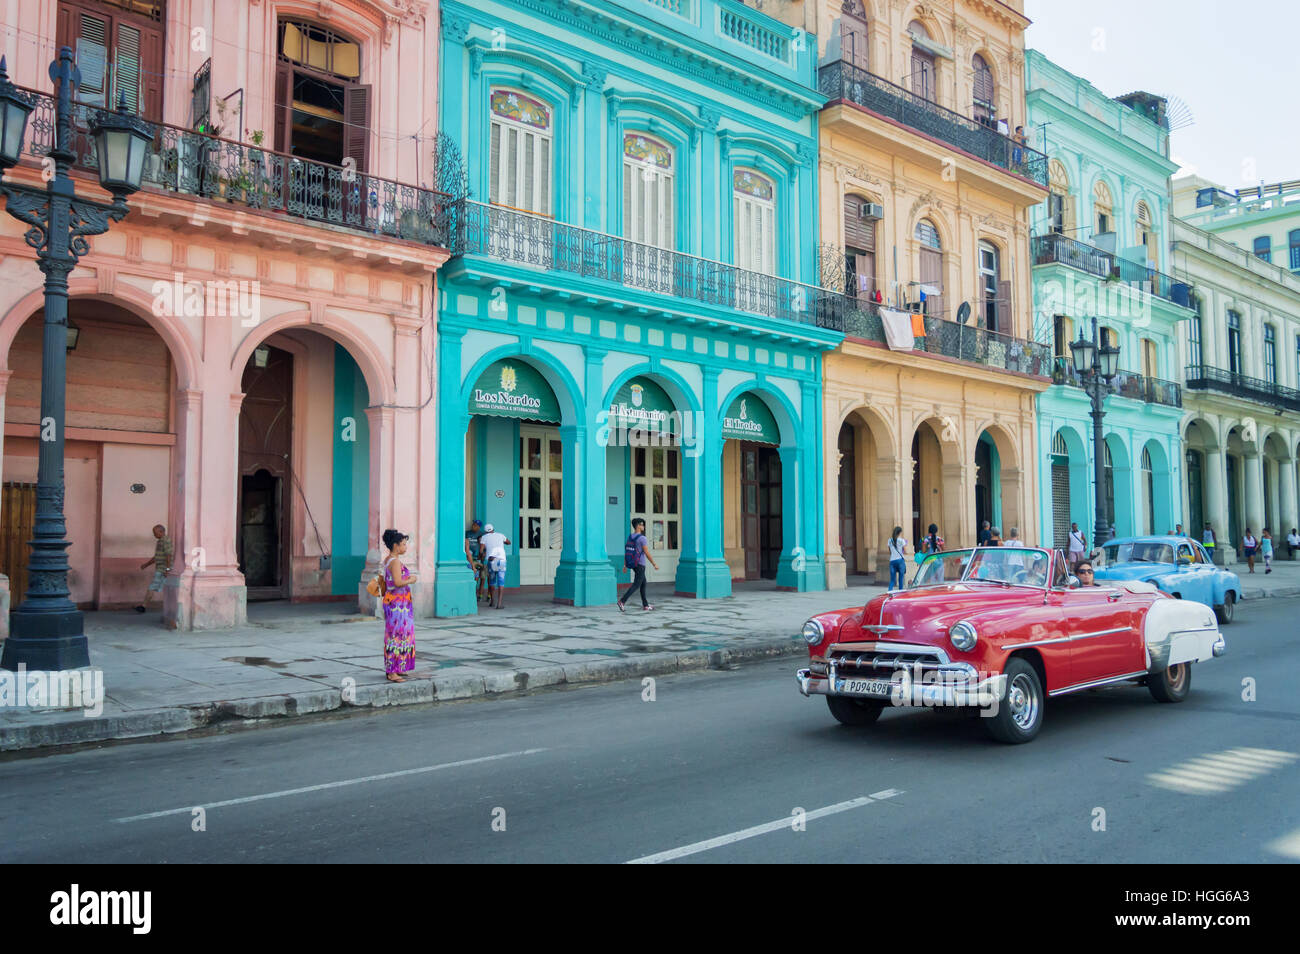 L'Avana, Cuba - 18 aprile: Classic vintage auto e colorati edifici coloniali nella strada principale di l'Avana Vecchia, il 18 aprile 2016 a L'Avana Foto Stock